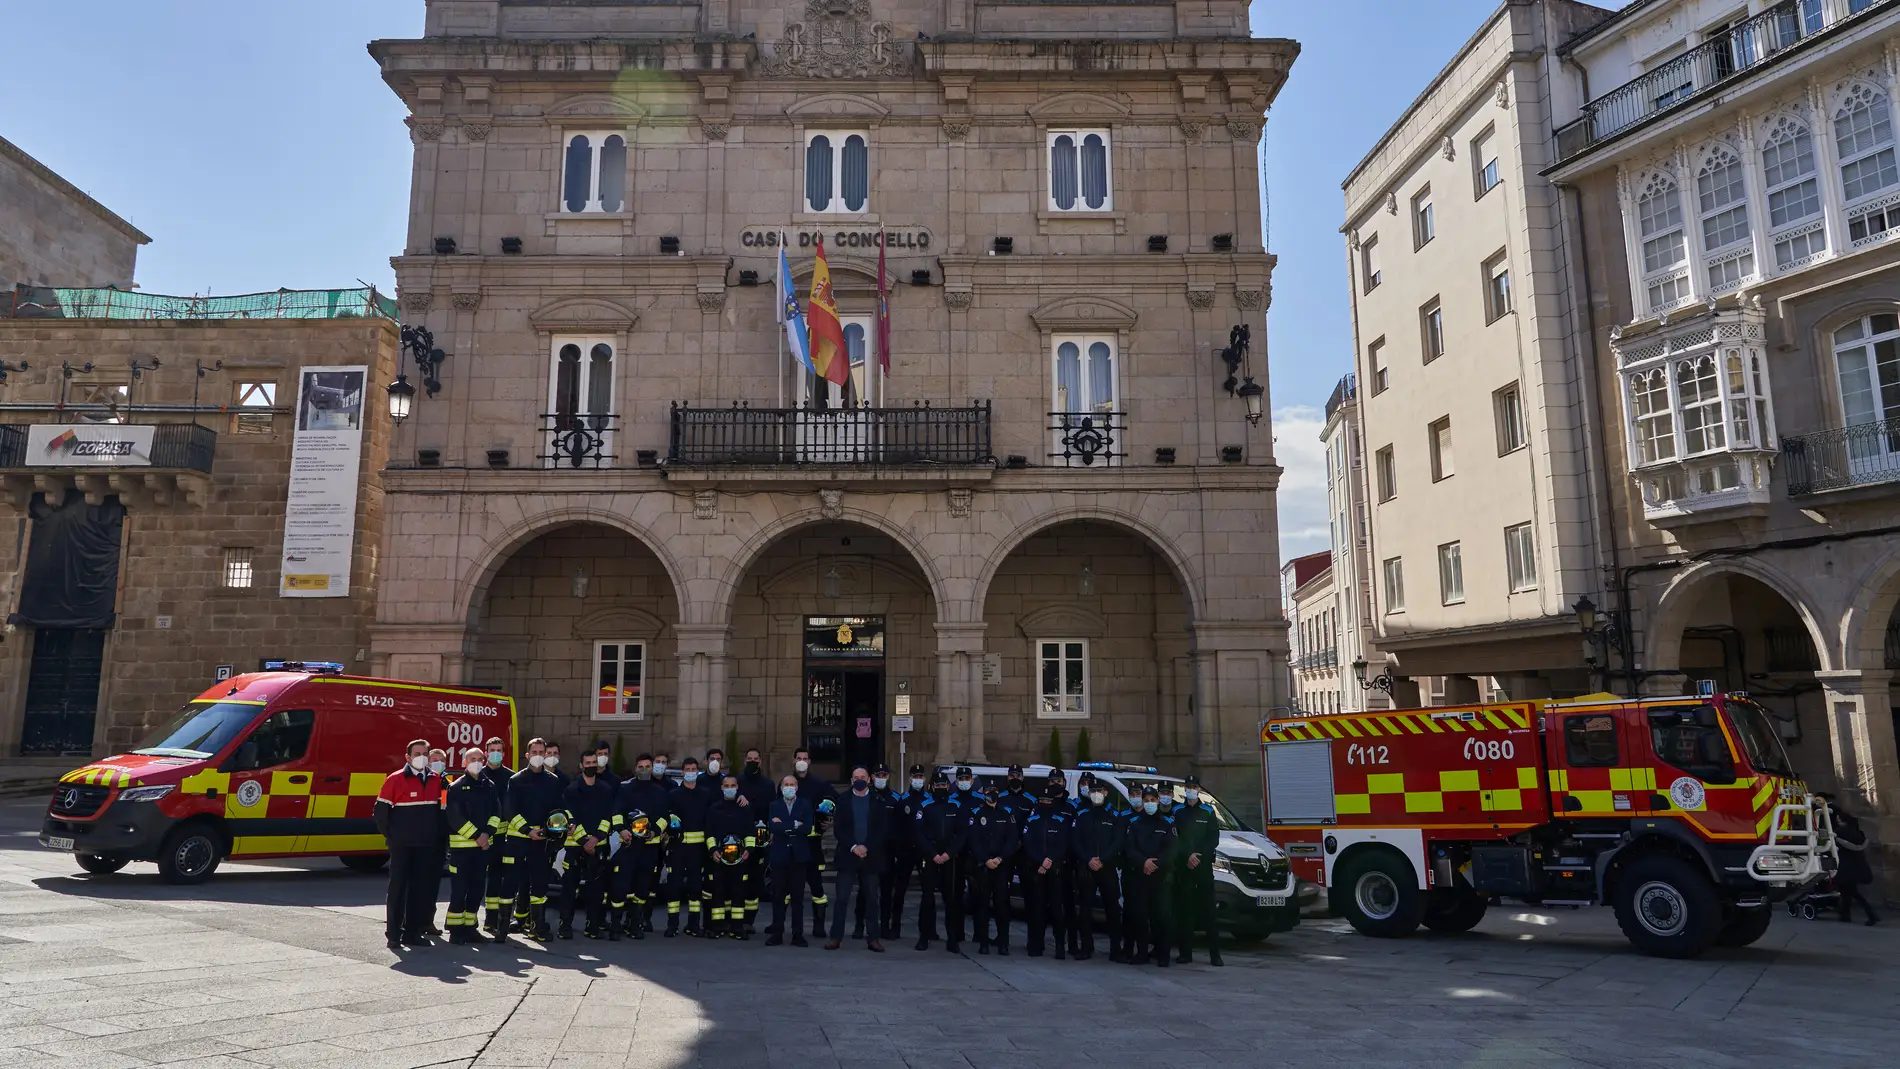 O Concello de Ourense reforza os corpos de seguridade da cidade